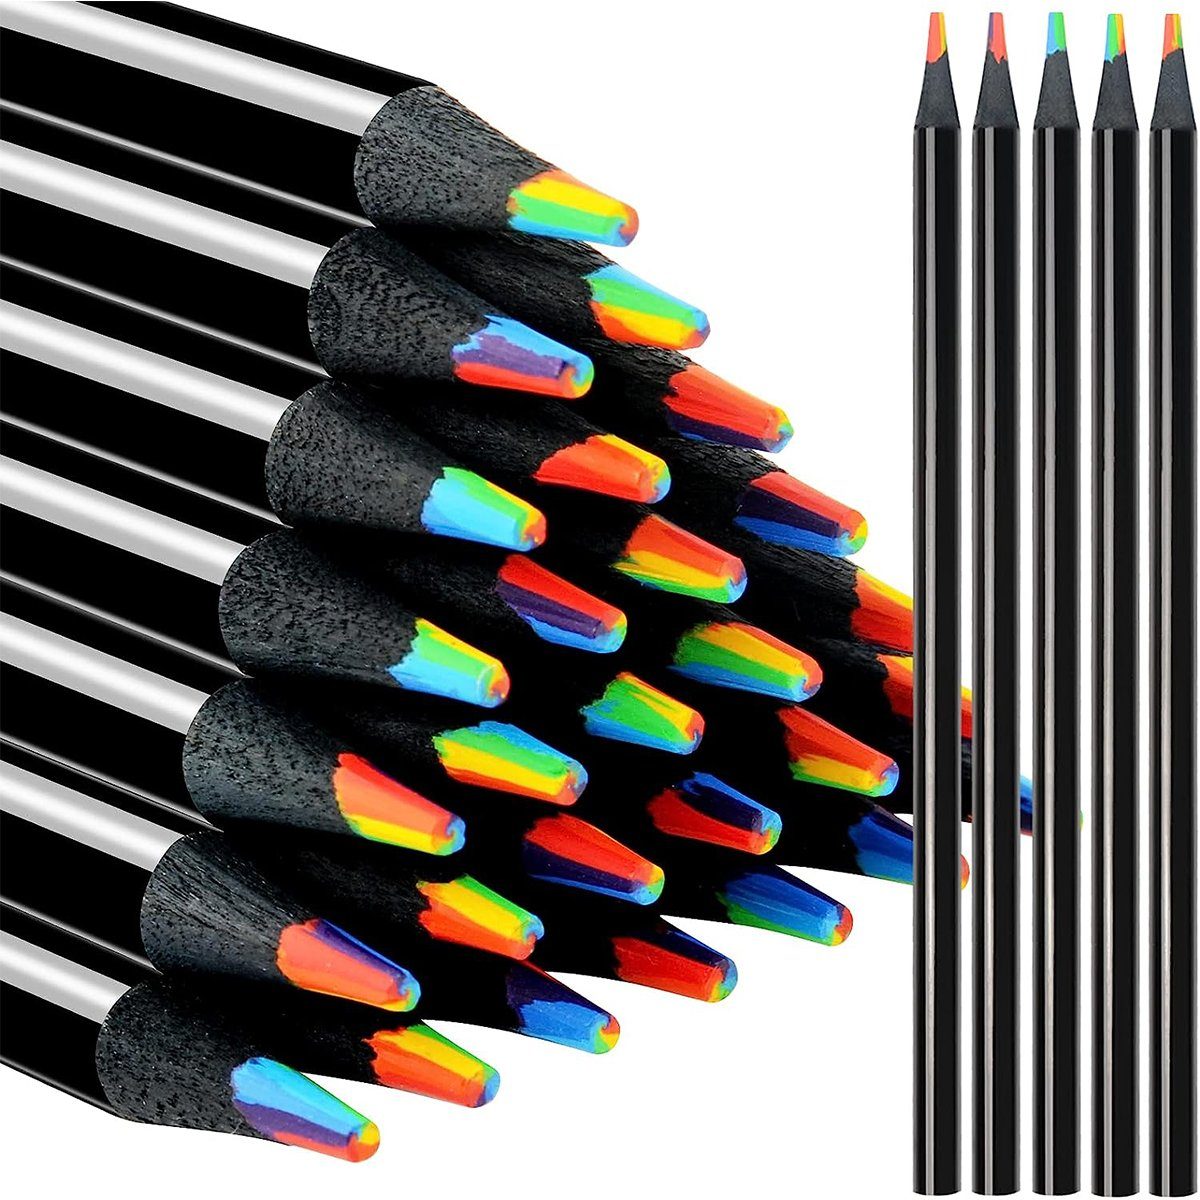 XDeer Buntstift 12 Stück 7 in 1 Farbstifte Buntstifte Schwarze Hölzerne, Mehrfarbige Stifte Art Supplies für Zeichnung Färbung